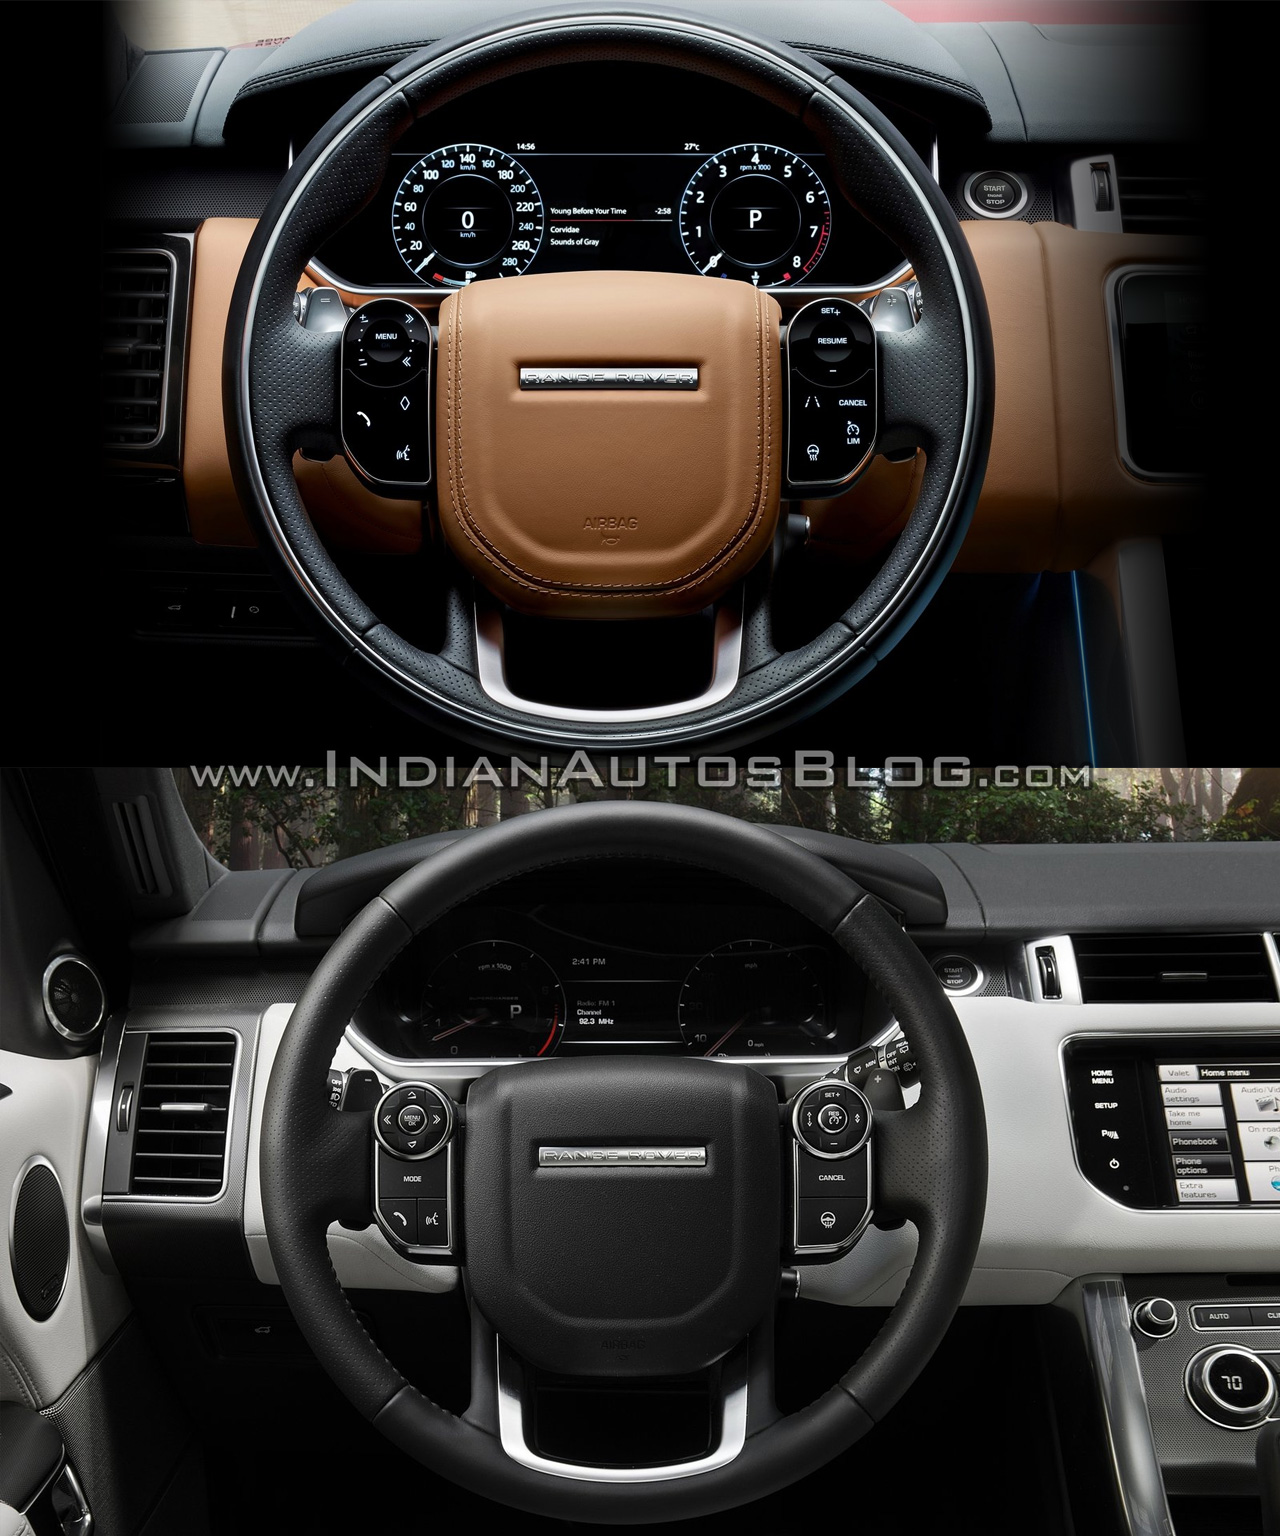 2018 Range Rover Sport vs. 2014 Range Rover Sport steering wheel